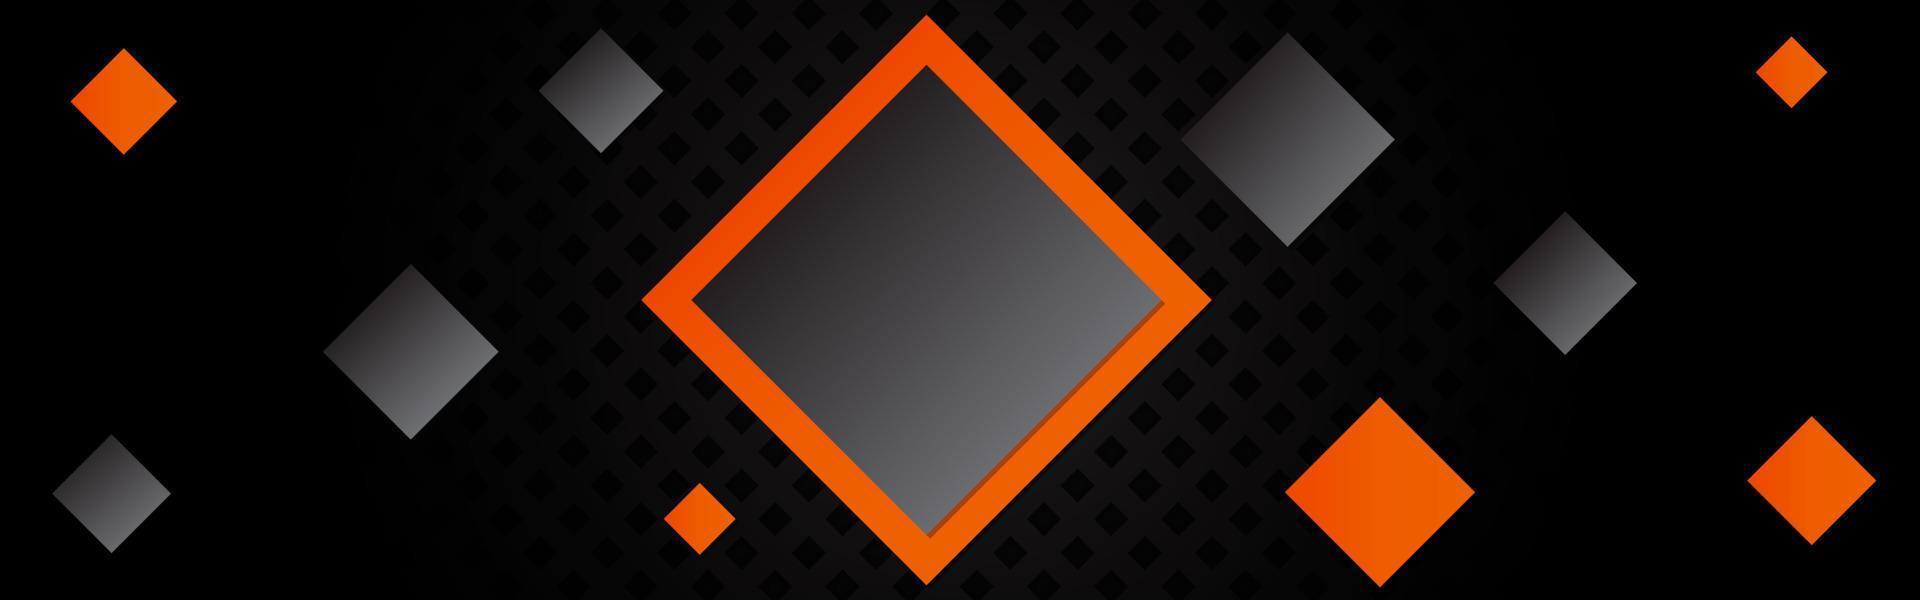 composición de moda de rombos naranjas y negros sobre un fondo negro. textura perforada de metal oscuro. ilustración geométrica de la tecnología. banner de vector de encabezado